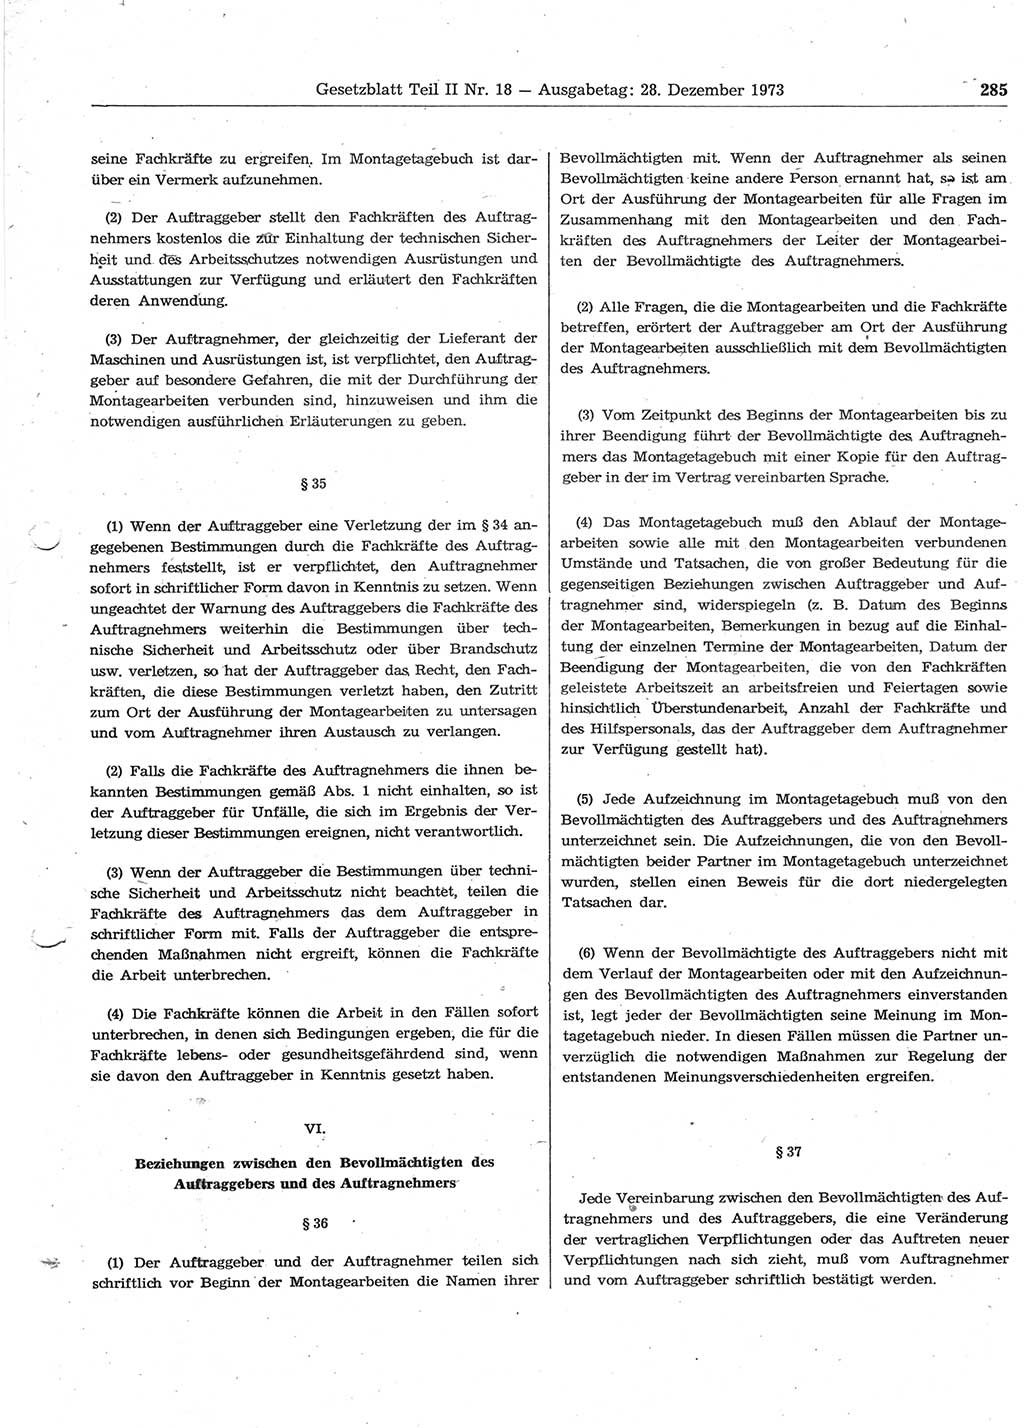 Gesetzblatt (GBl.) der Deutschen Demokratischen Republik (DDR) Teil ⅠⅠ 1973, Seite 285 (GBl. DDR ⅠⅠ 1973, S. 285)